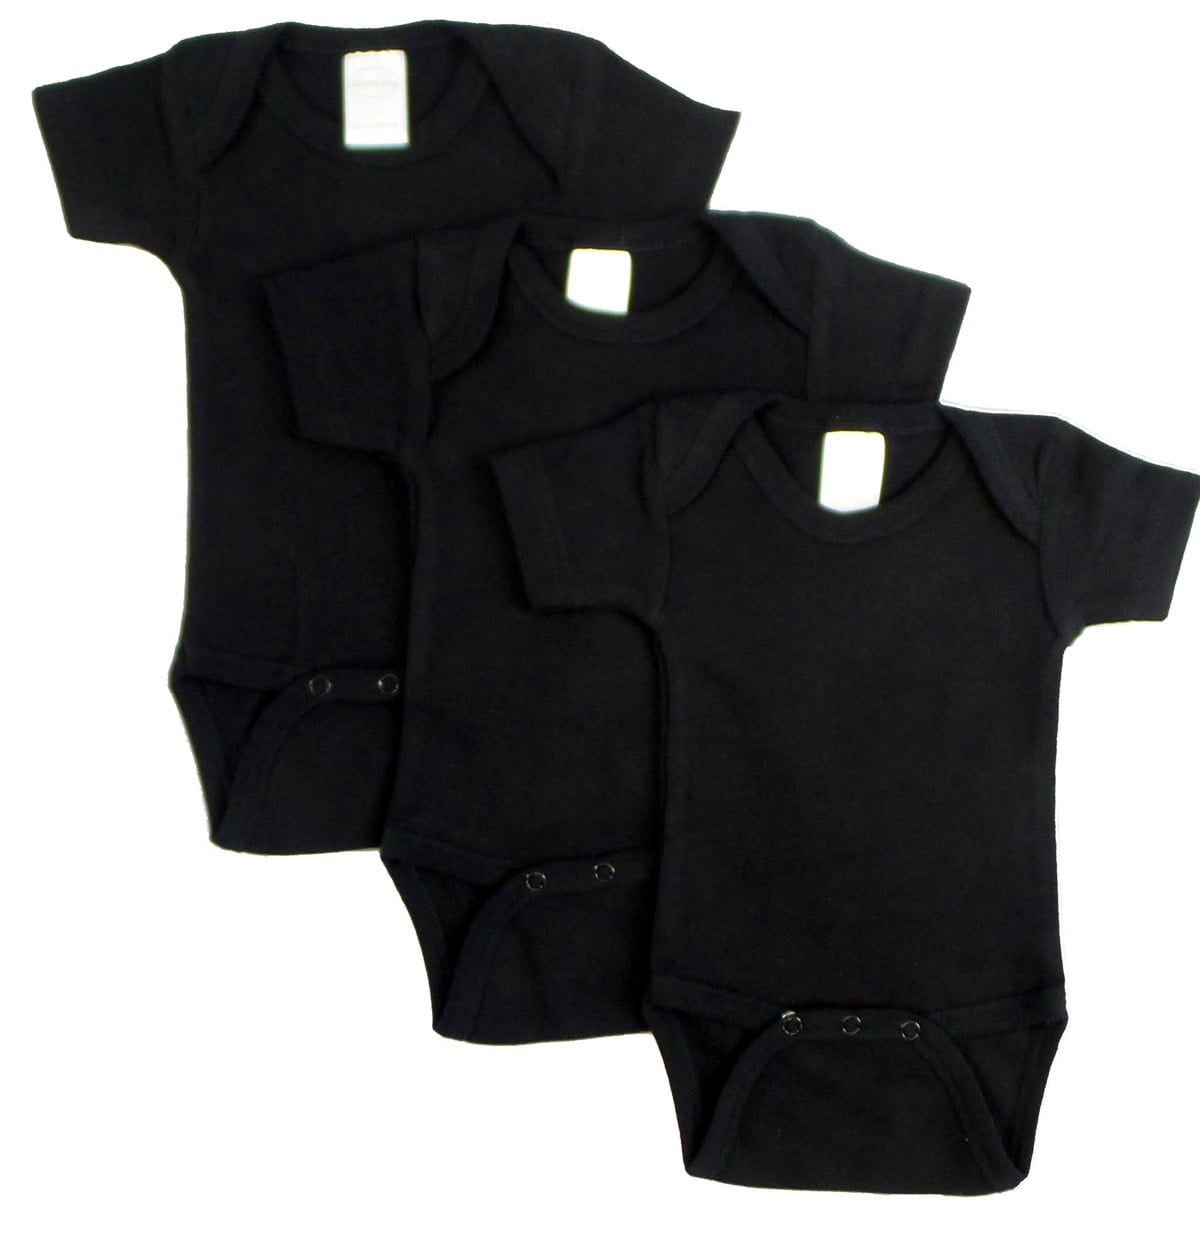 Short Sleeve - Black, Medium - Pack Of 3